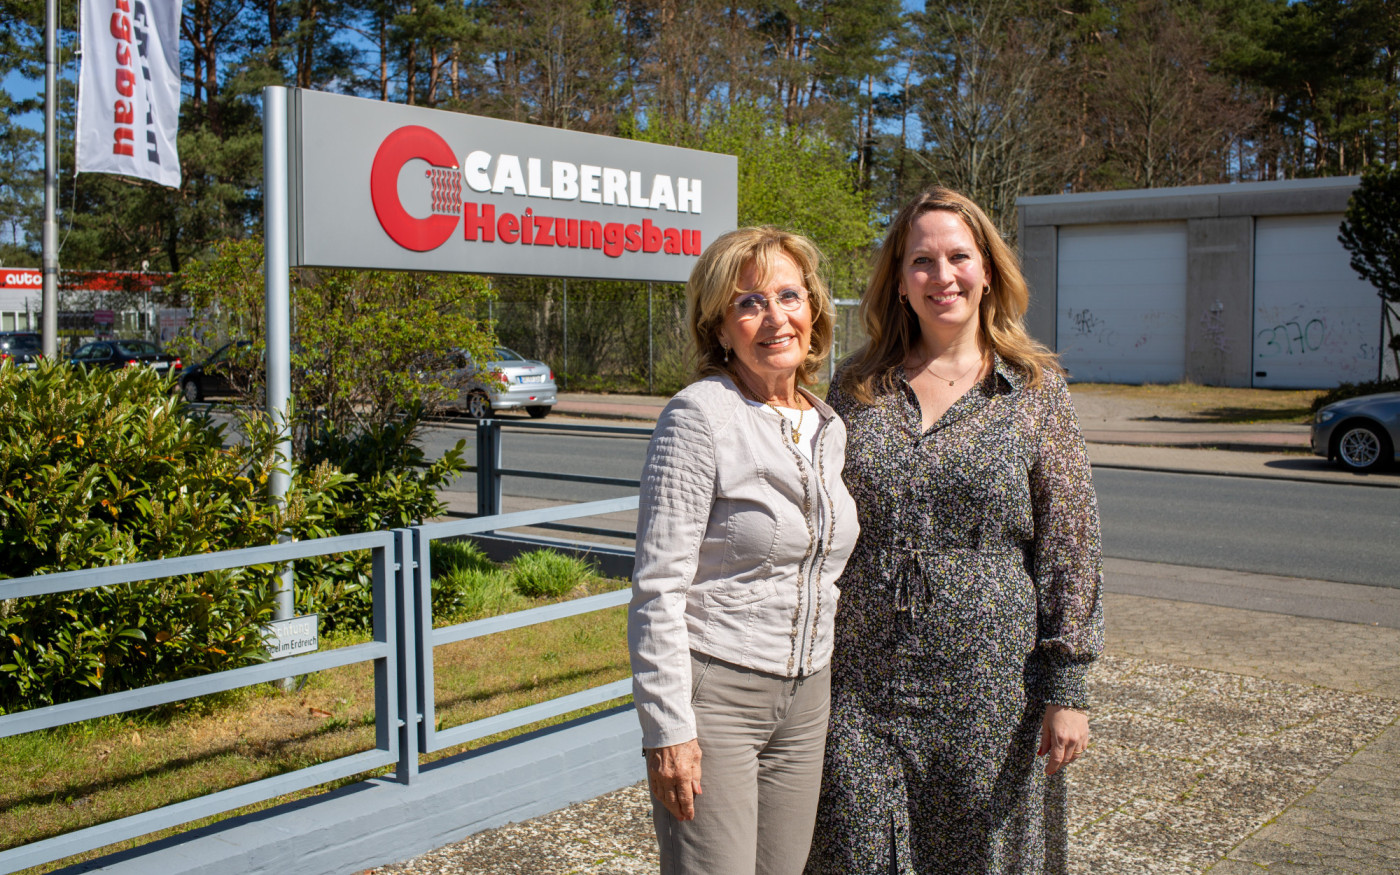 Calberlah Heizungsbau - Geschäftsstelle hat zwar geschlossen, doch die Kundenerreichbarkeit ist gegeben